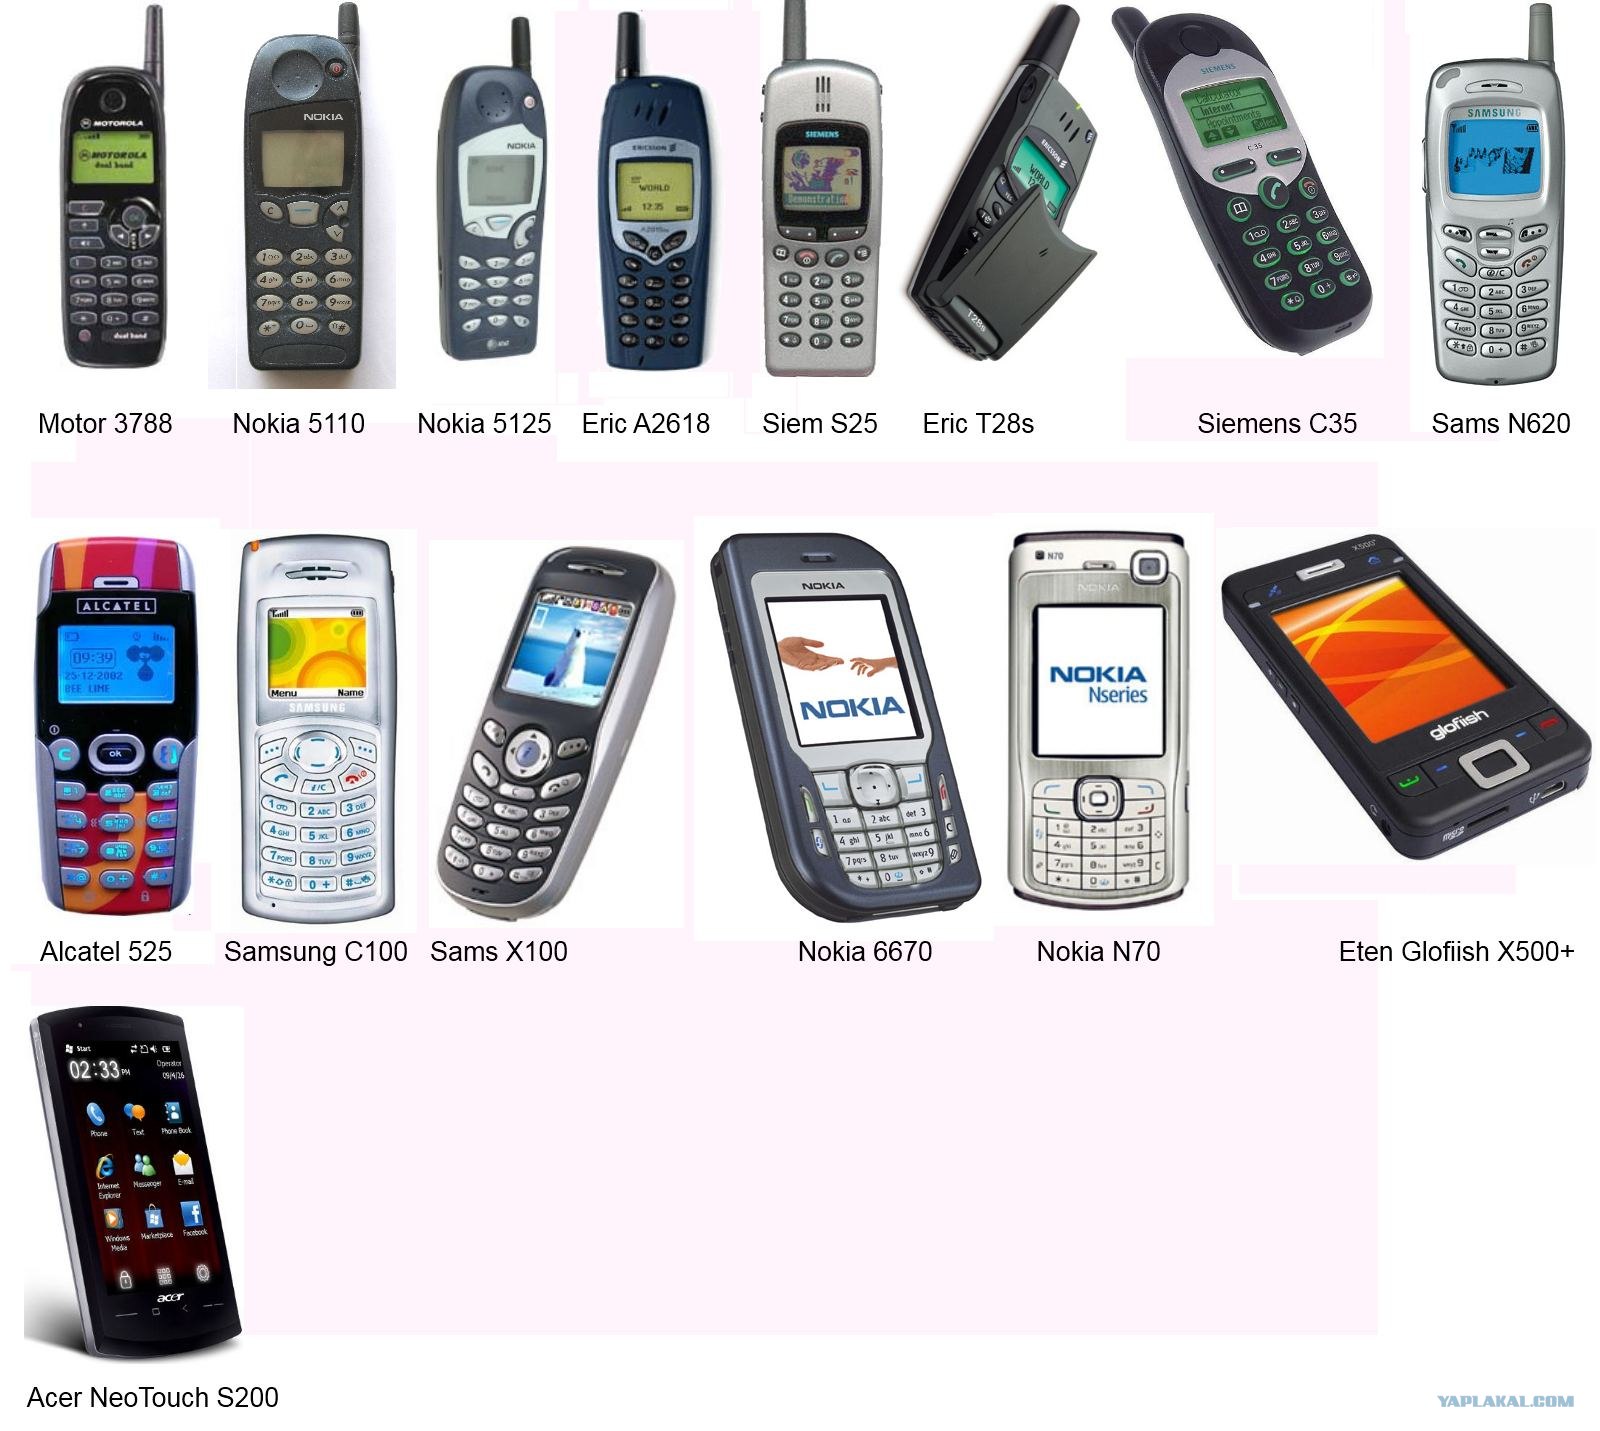 Тамбов какие телефоны. Нокиа 2001 года. Первые мобильники. Самый 1 сотовый телефон. Первые модели мобильных телефонов.